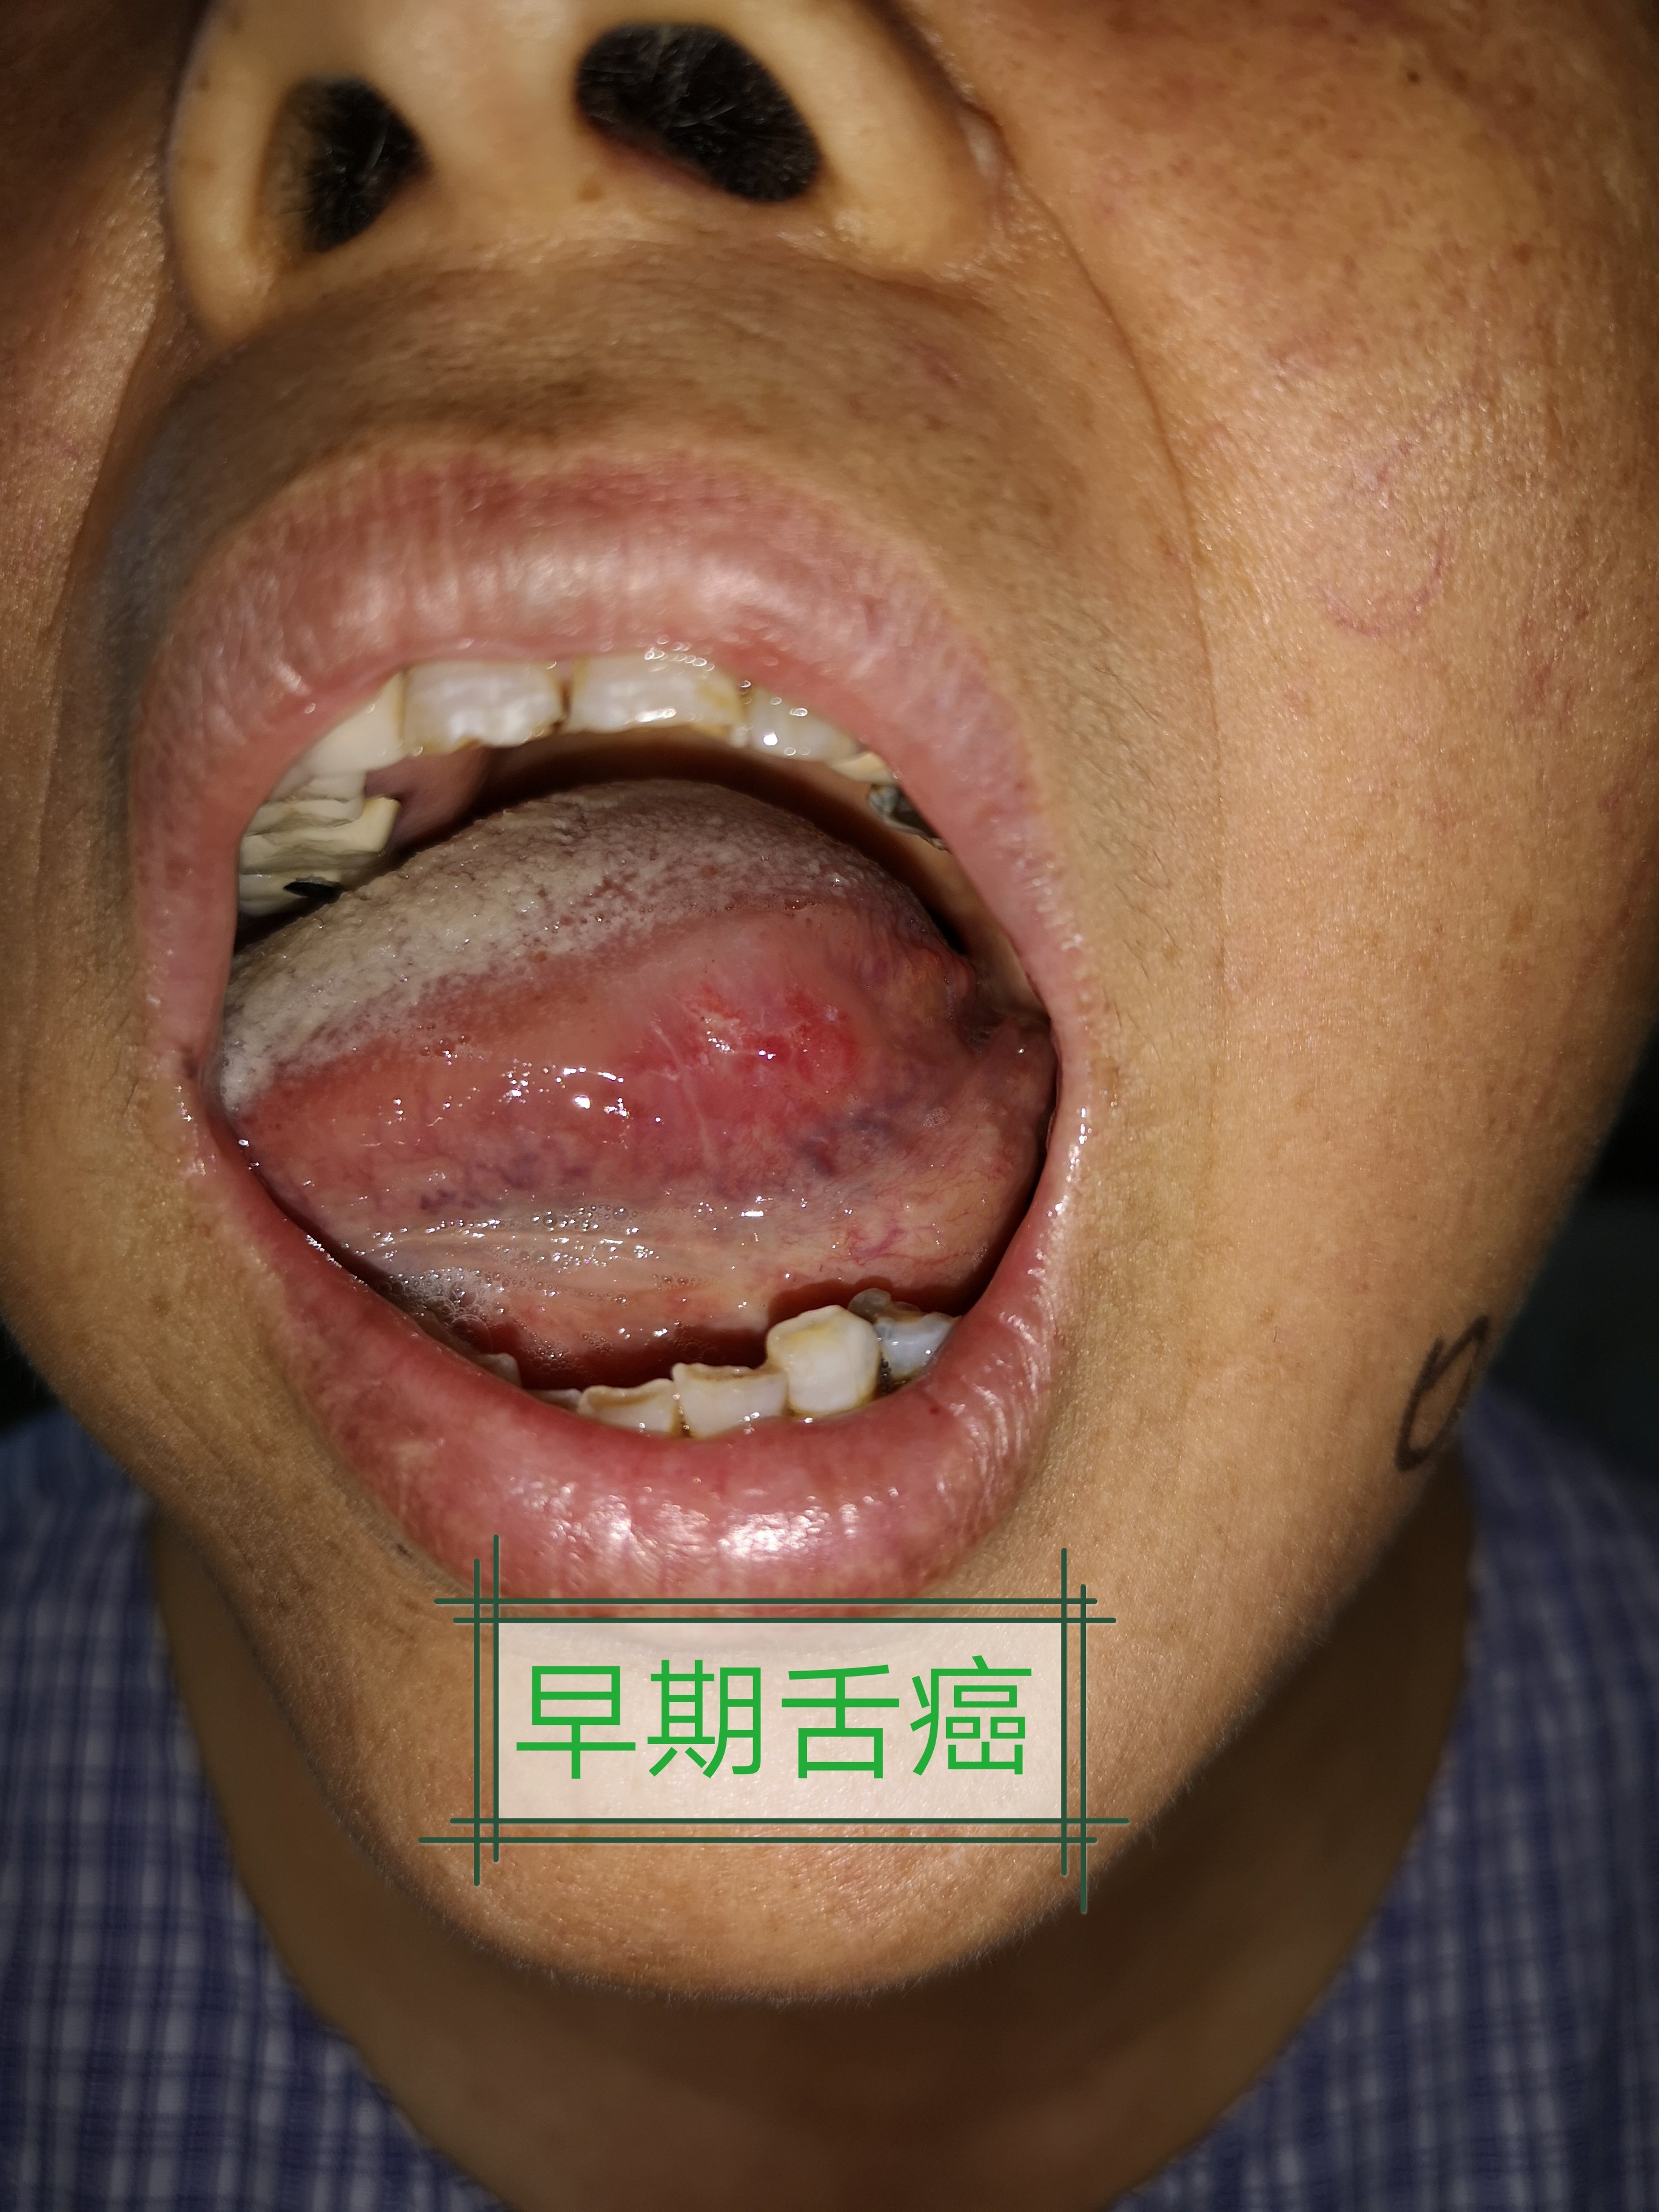 不良修复体等长期慢性刺激,也可由舌白斑,扁平苔藓等良性疾病癌变引起